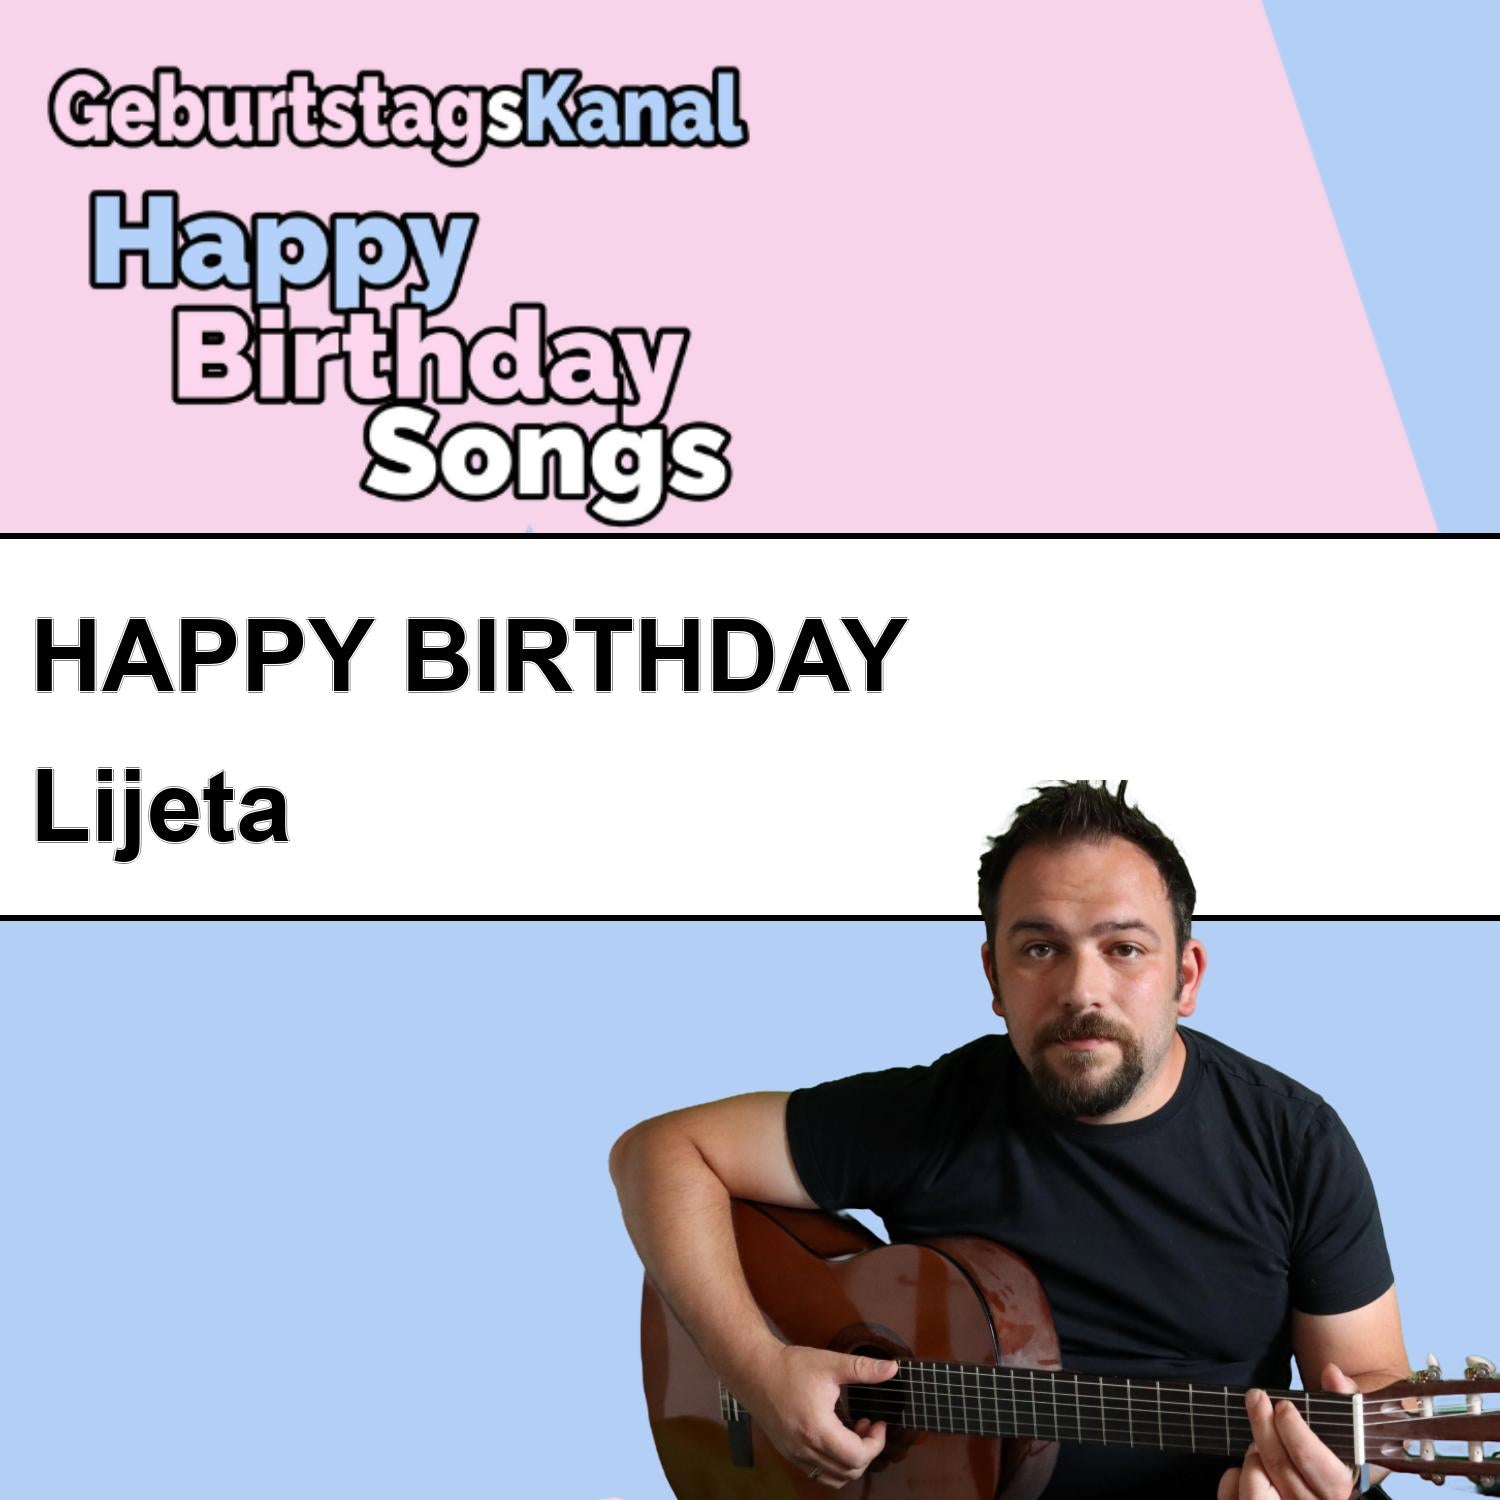 Produktbild Happy Birthday to you Lijeta mit Wunschgrußbotschaft